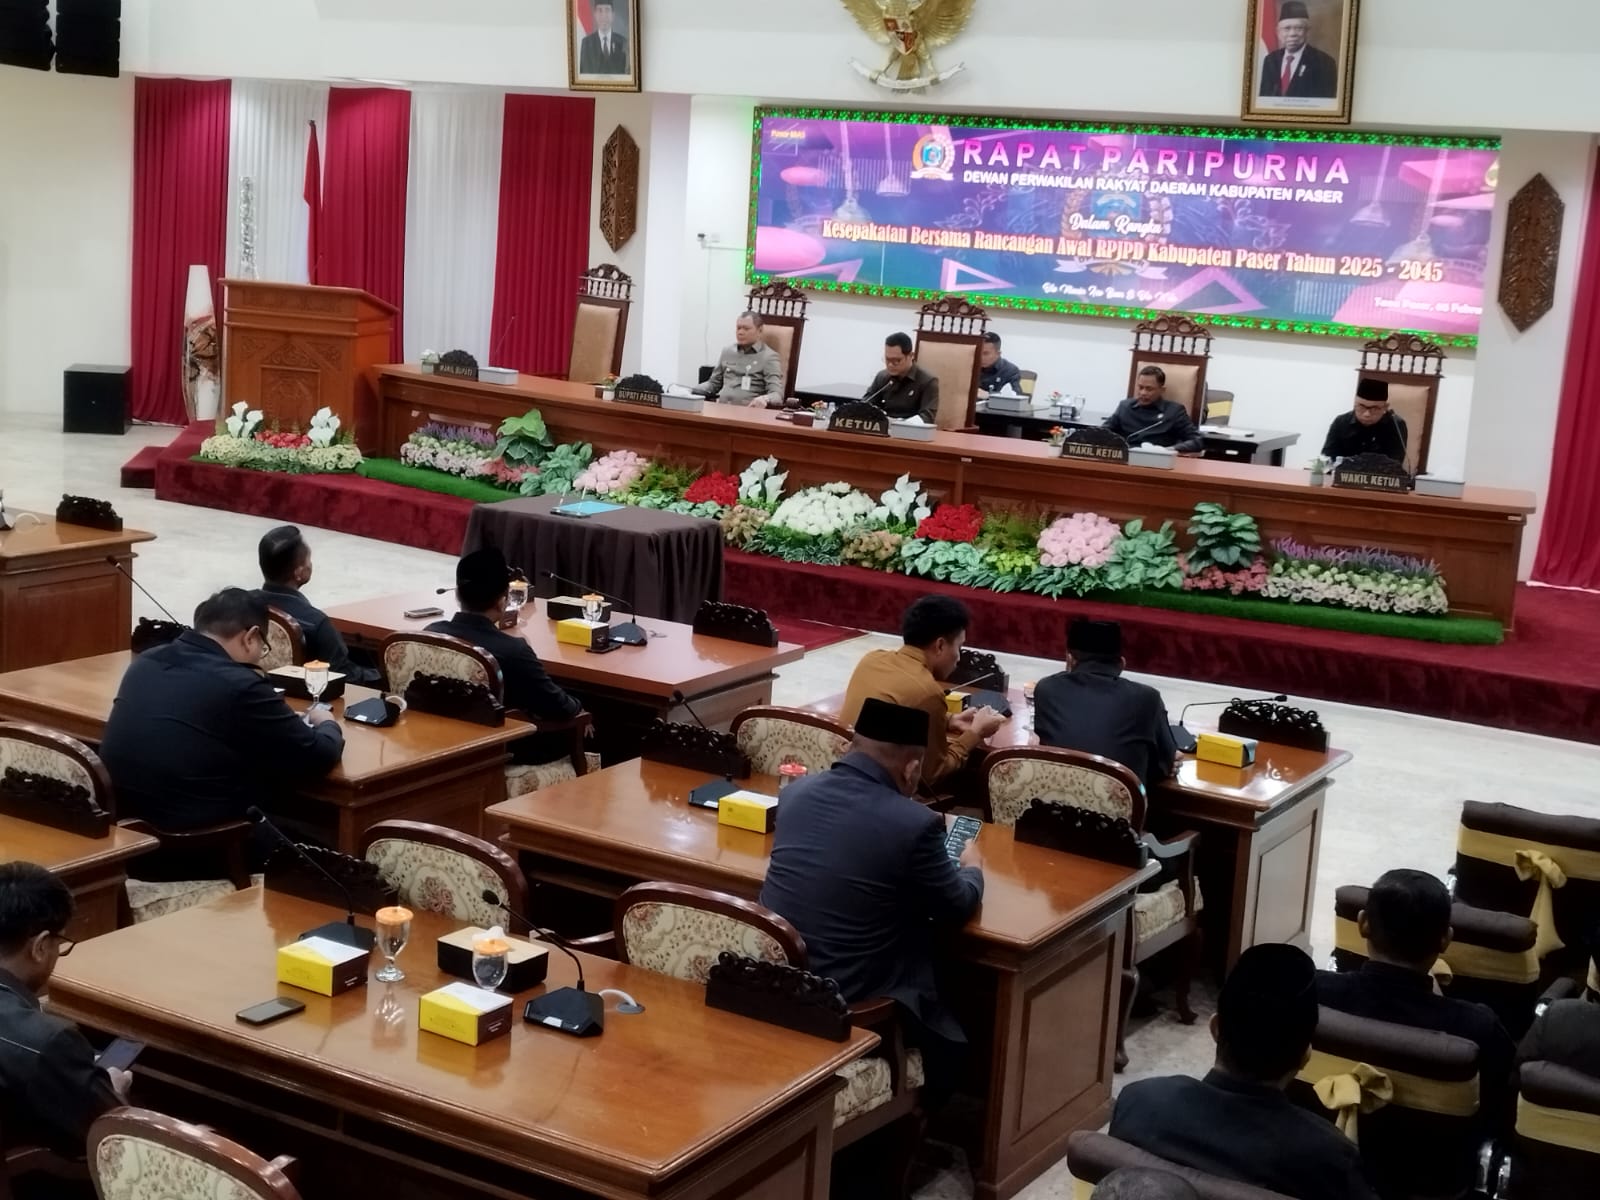 Paser Mulia jadi Visi RPJPD 2025-2045, DPRD Ingatkan Rumusan Harus Sesuai Kondisi Daerah 